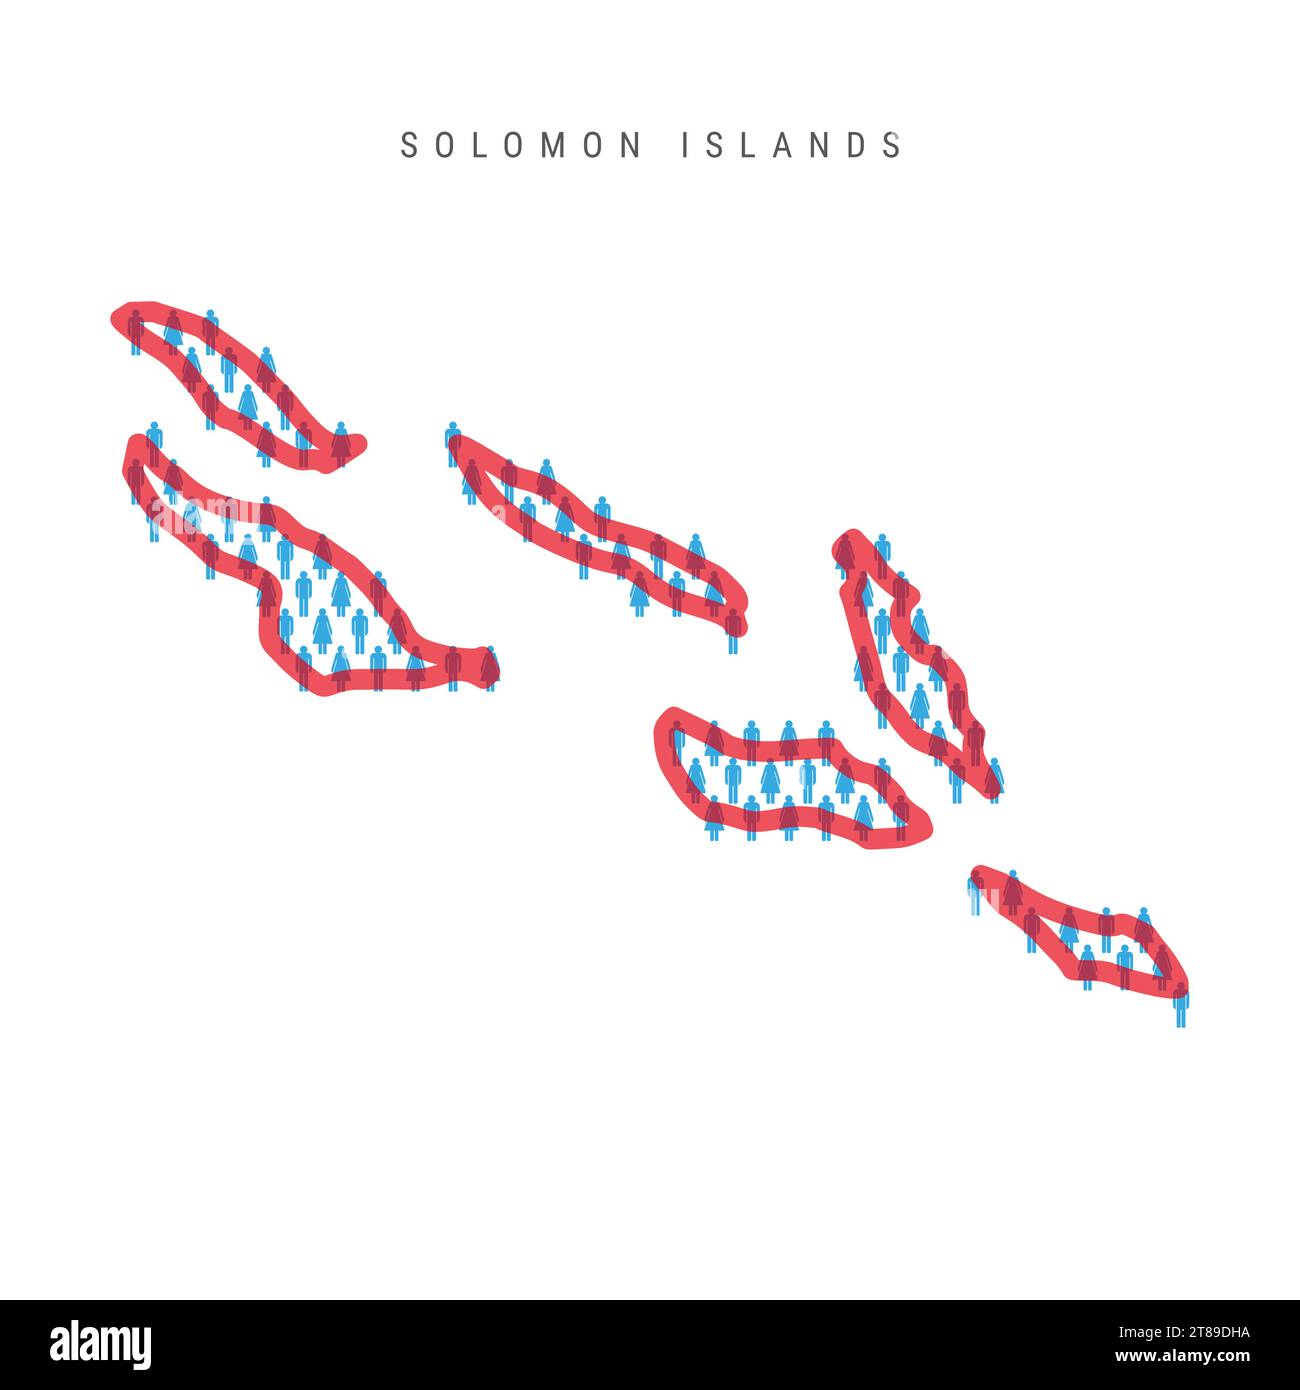 Salomonen Bevölkerungskarte. Stabfiguren Melanesiens Volkskarte mit auffälliger rot durchscheinender Landesgrenze. Muster von Ikonen für Männer und Frauen. Isoliert Stock Vektor